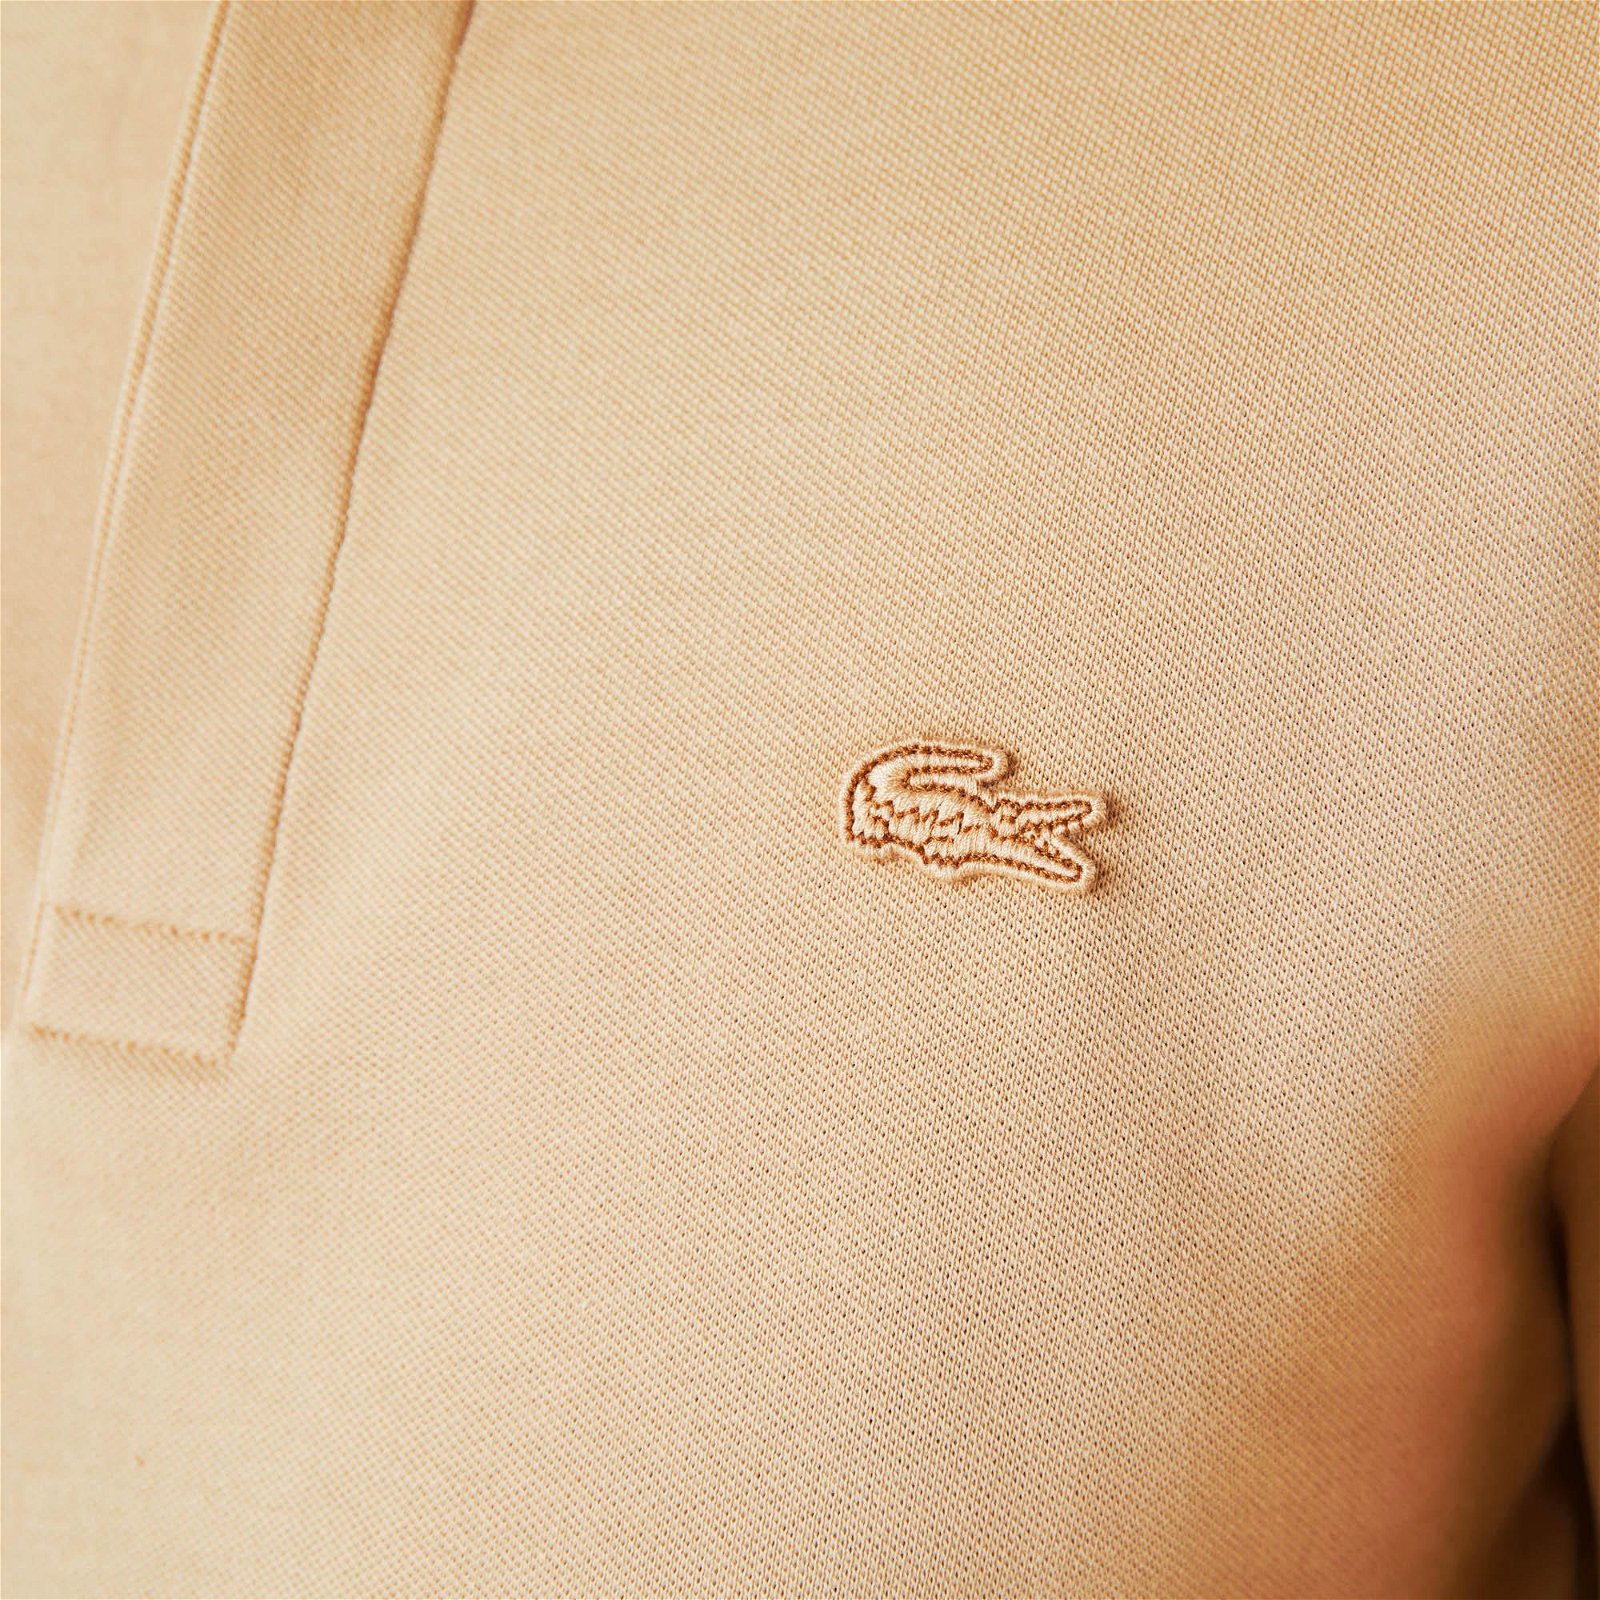 Smart Paris polotričko ze strečové piqué bavlny s dlouhým rukávem